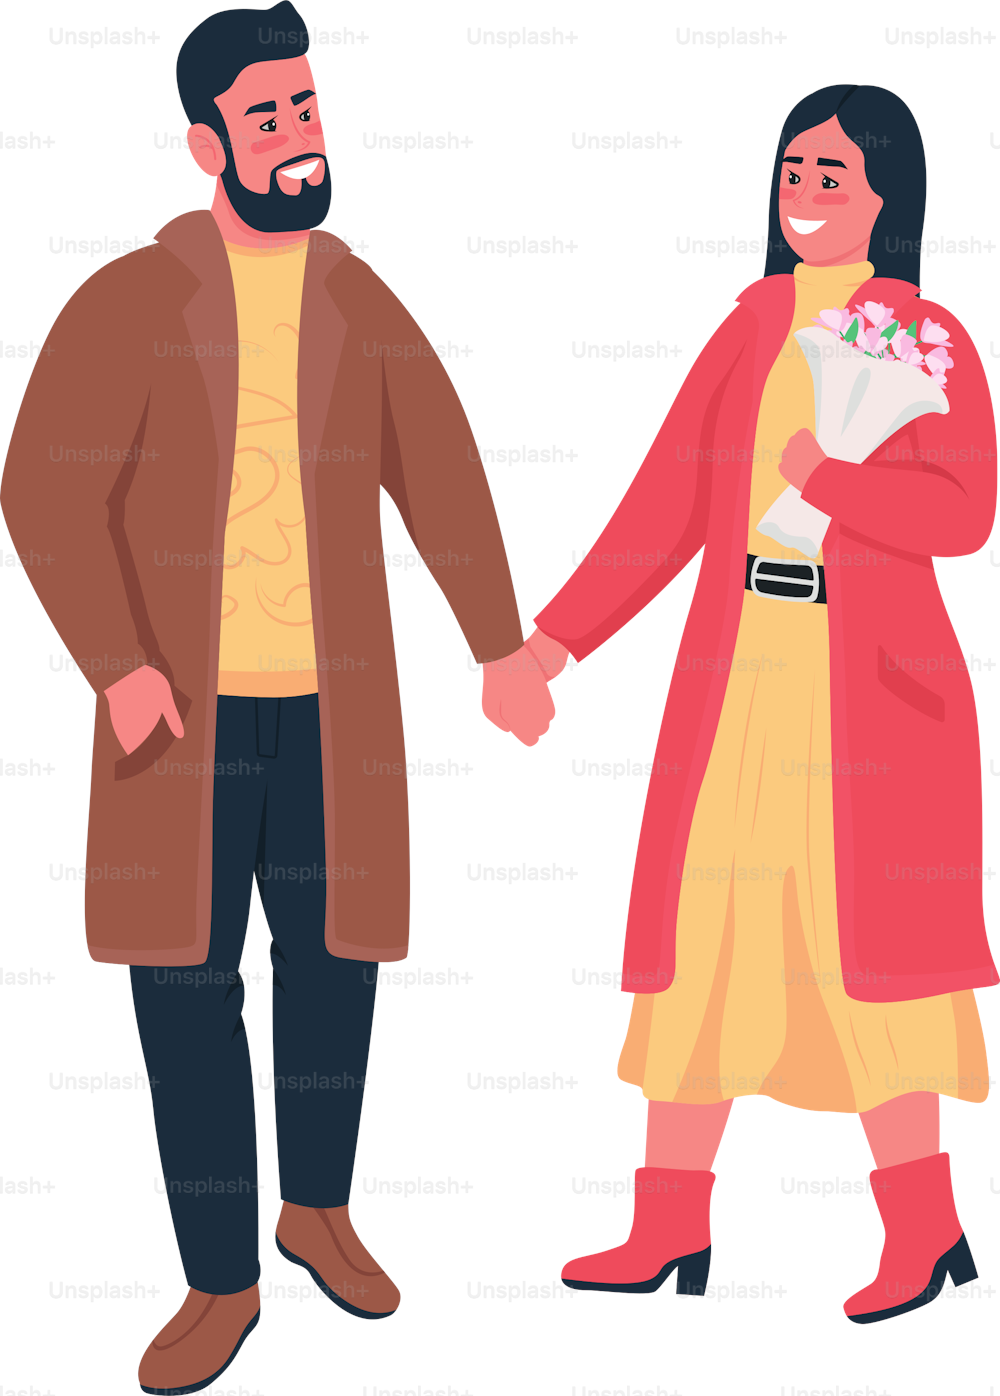 Feliz pareja tomada de la mano en la caminata de invierno de colores planos vectoriales detallados personajes. Relación romántica. Celebración del día de San Valentín ilustración aislada de dibujos animados para diseño gráfico web y animación